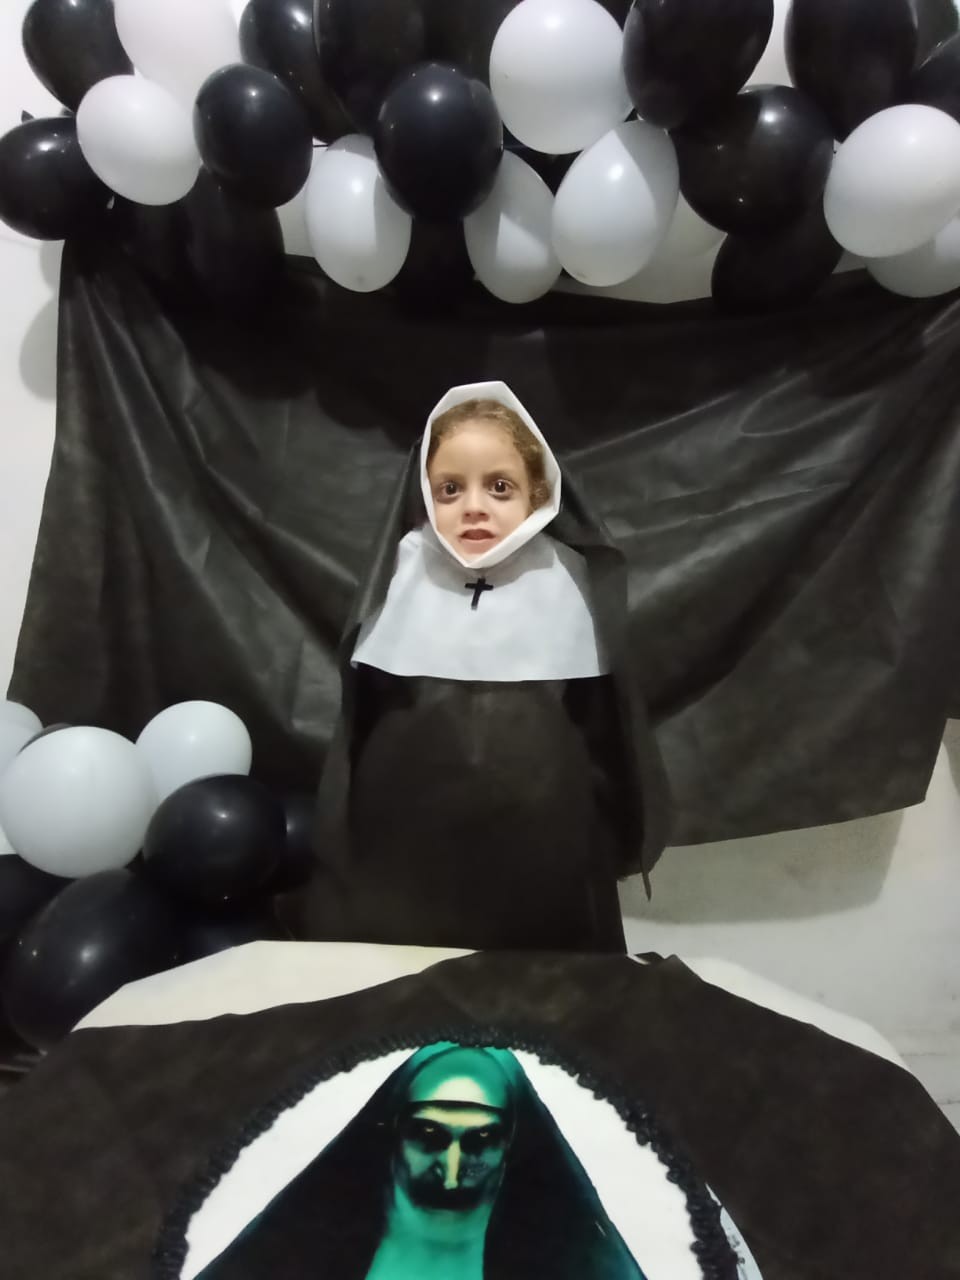 Menina viraliza após ir vestida de freira em aniversário (Foto: Arquivo pessoal)